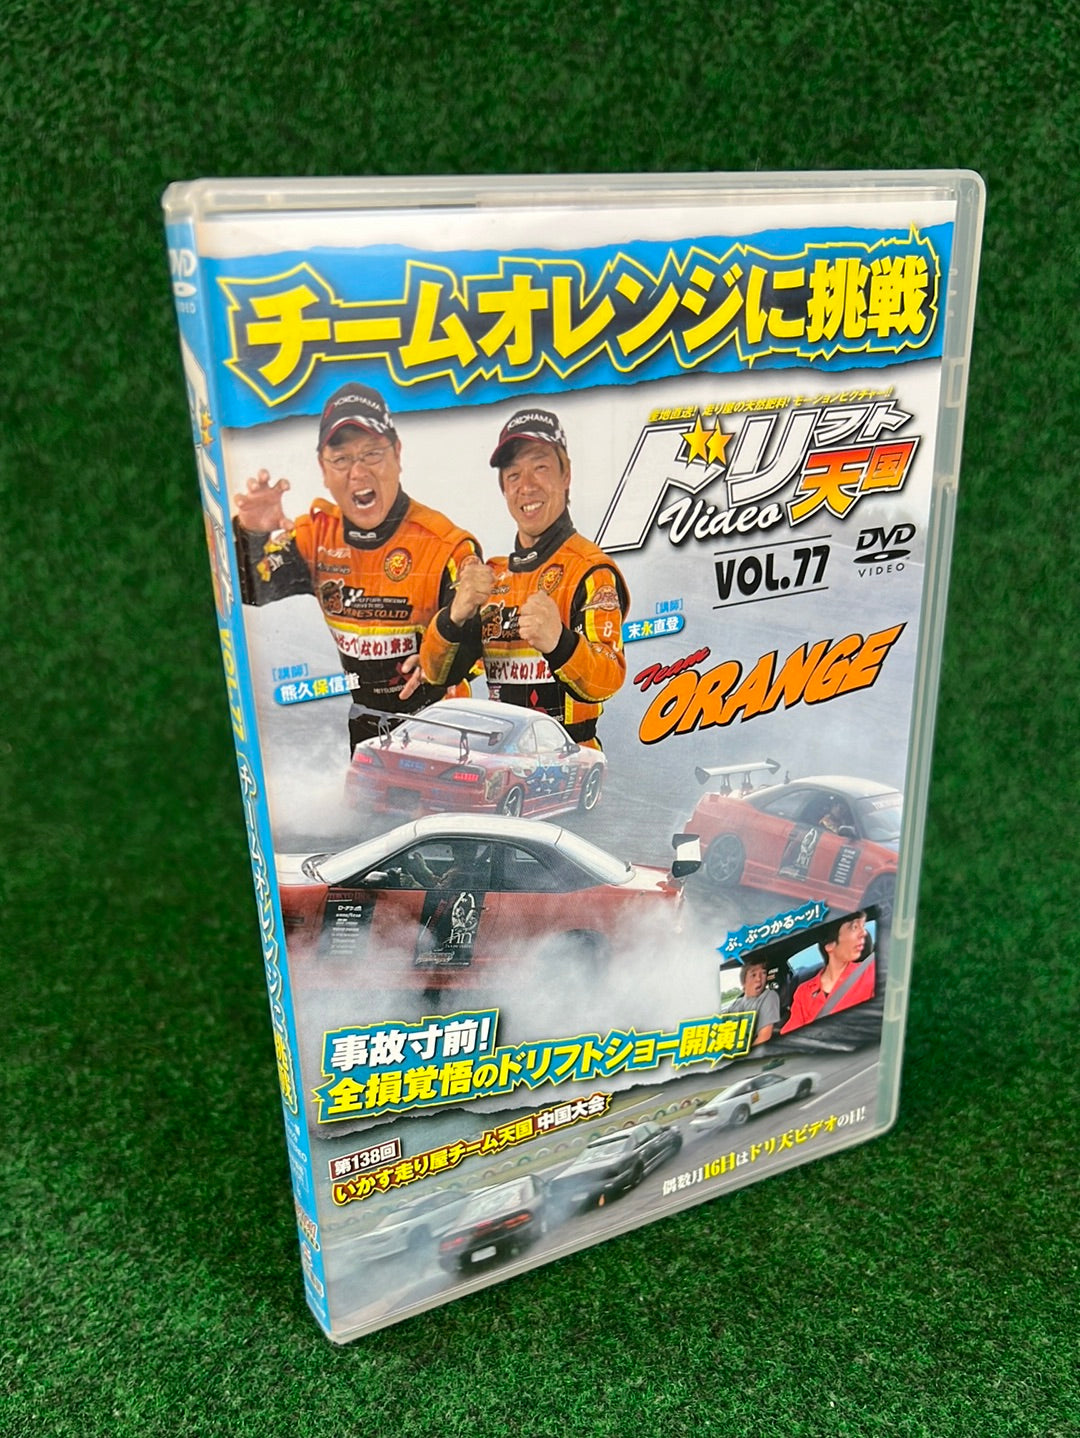 Drift Tengoku DVD - Vol. 77